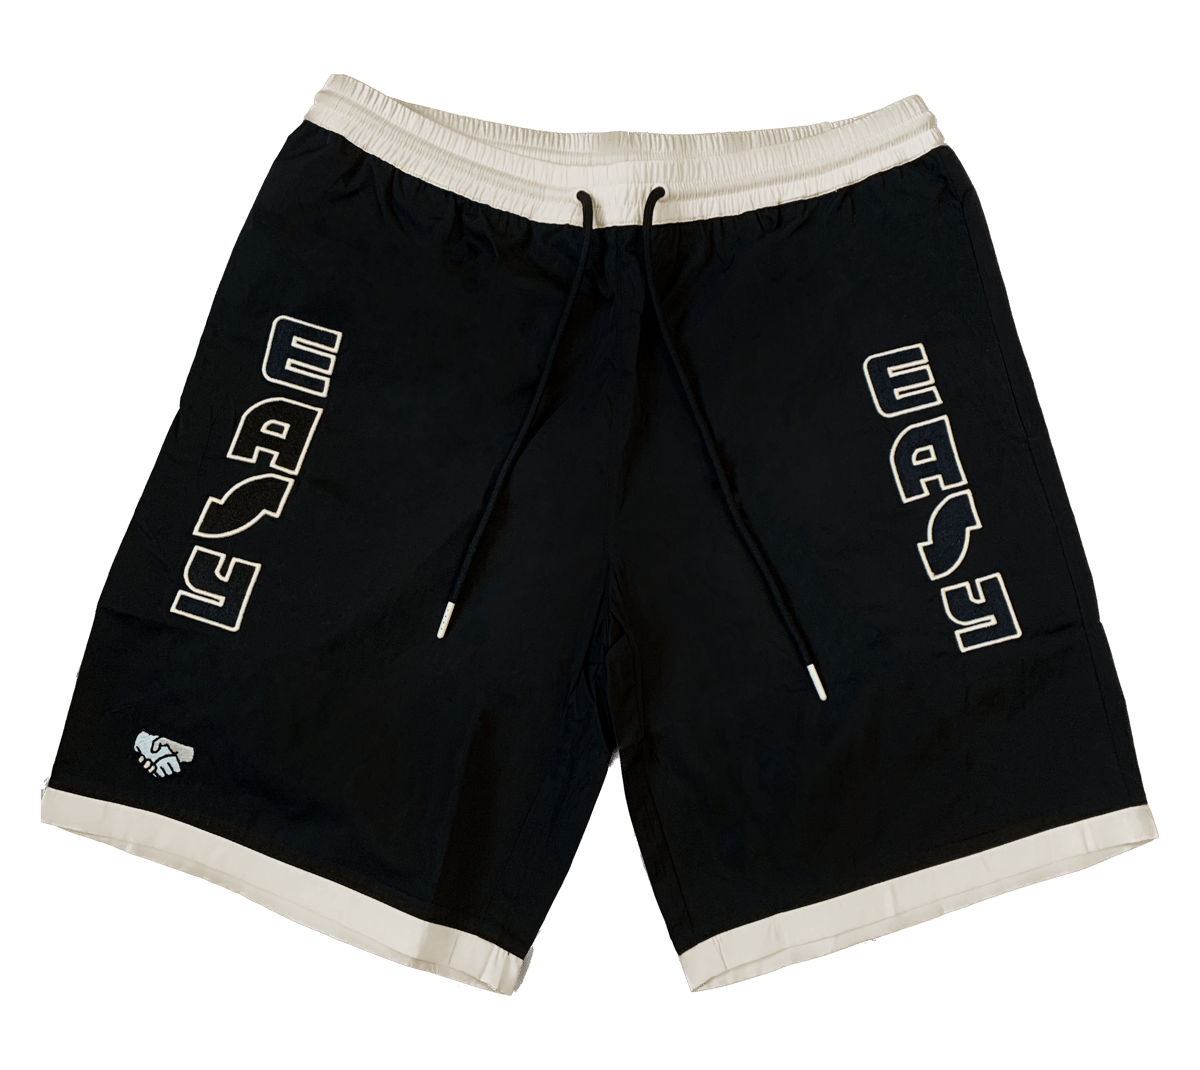 EASY Black Shorts | 2minorities